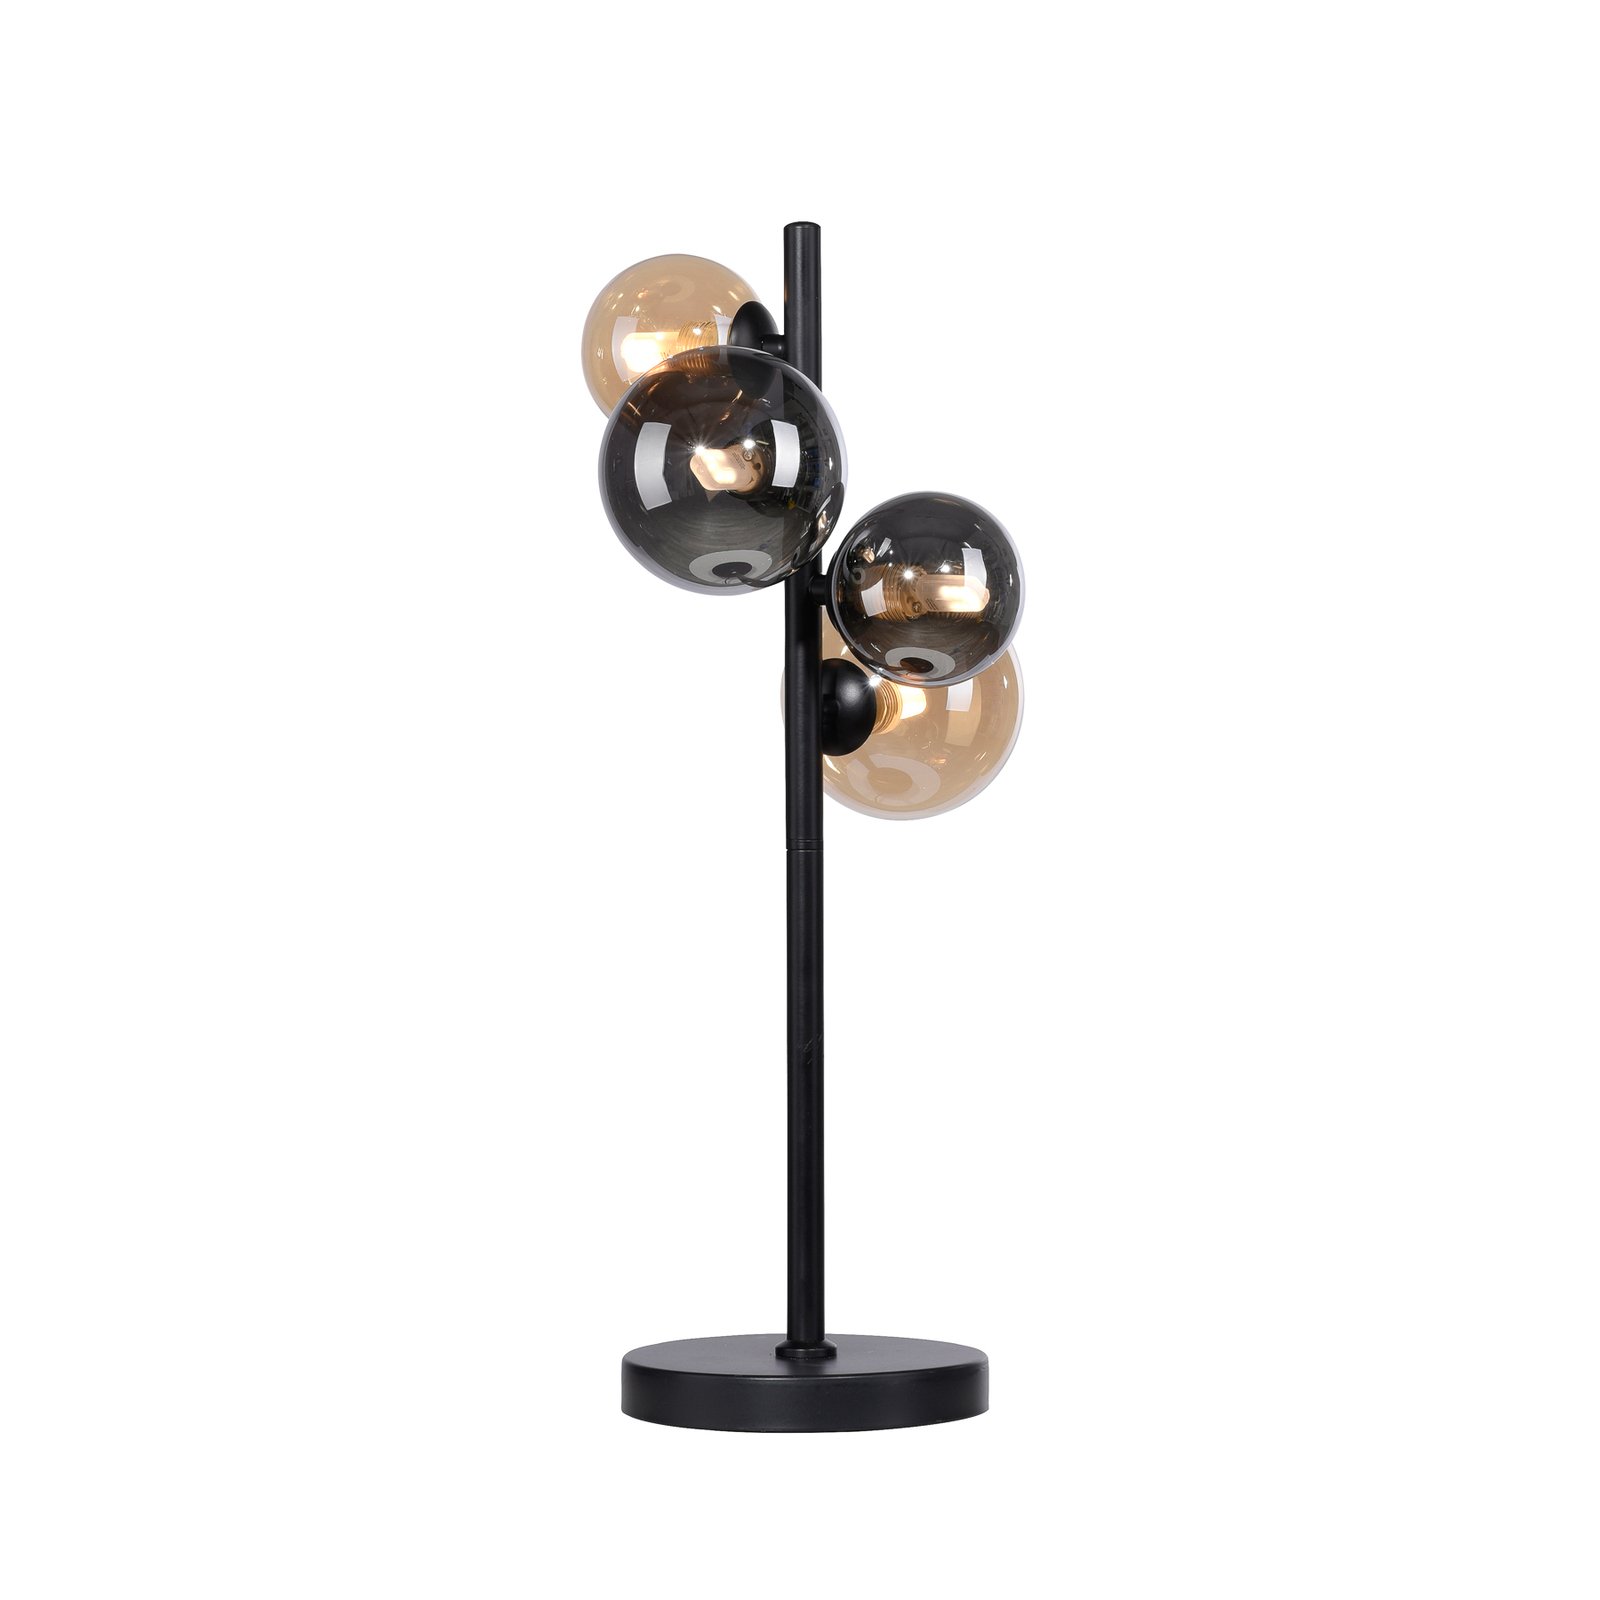 Paul Neuhaus populární stolní lampa